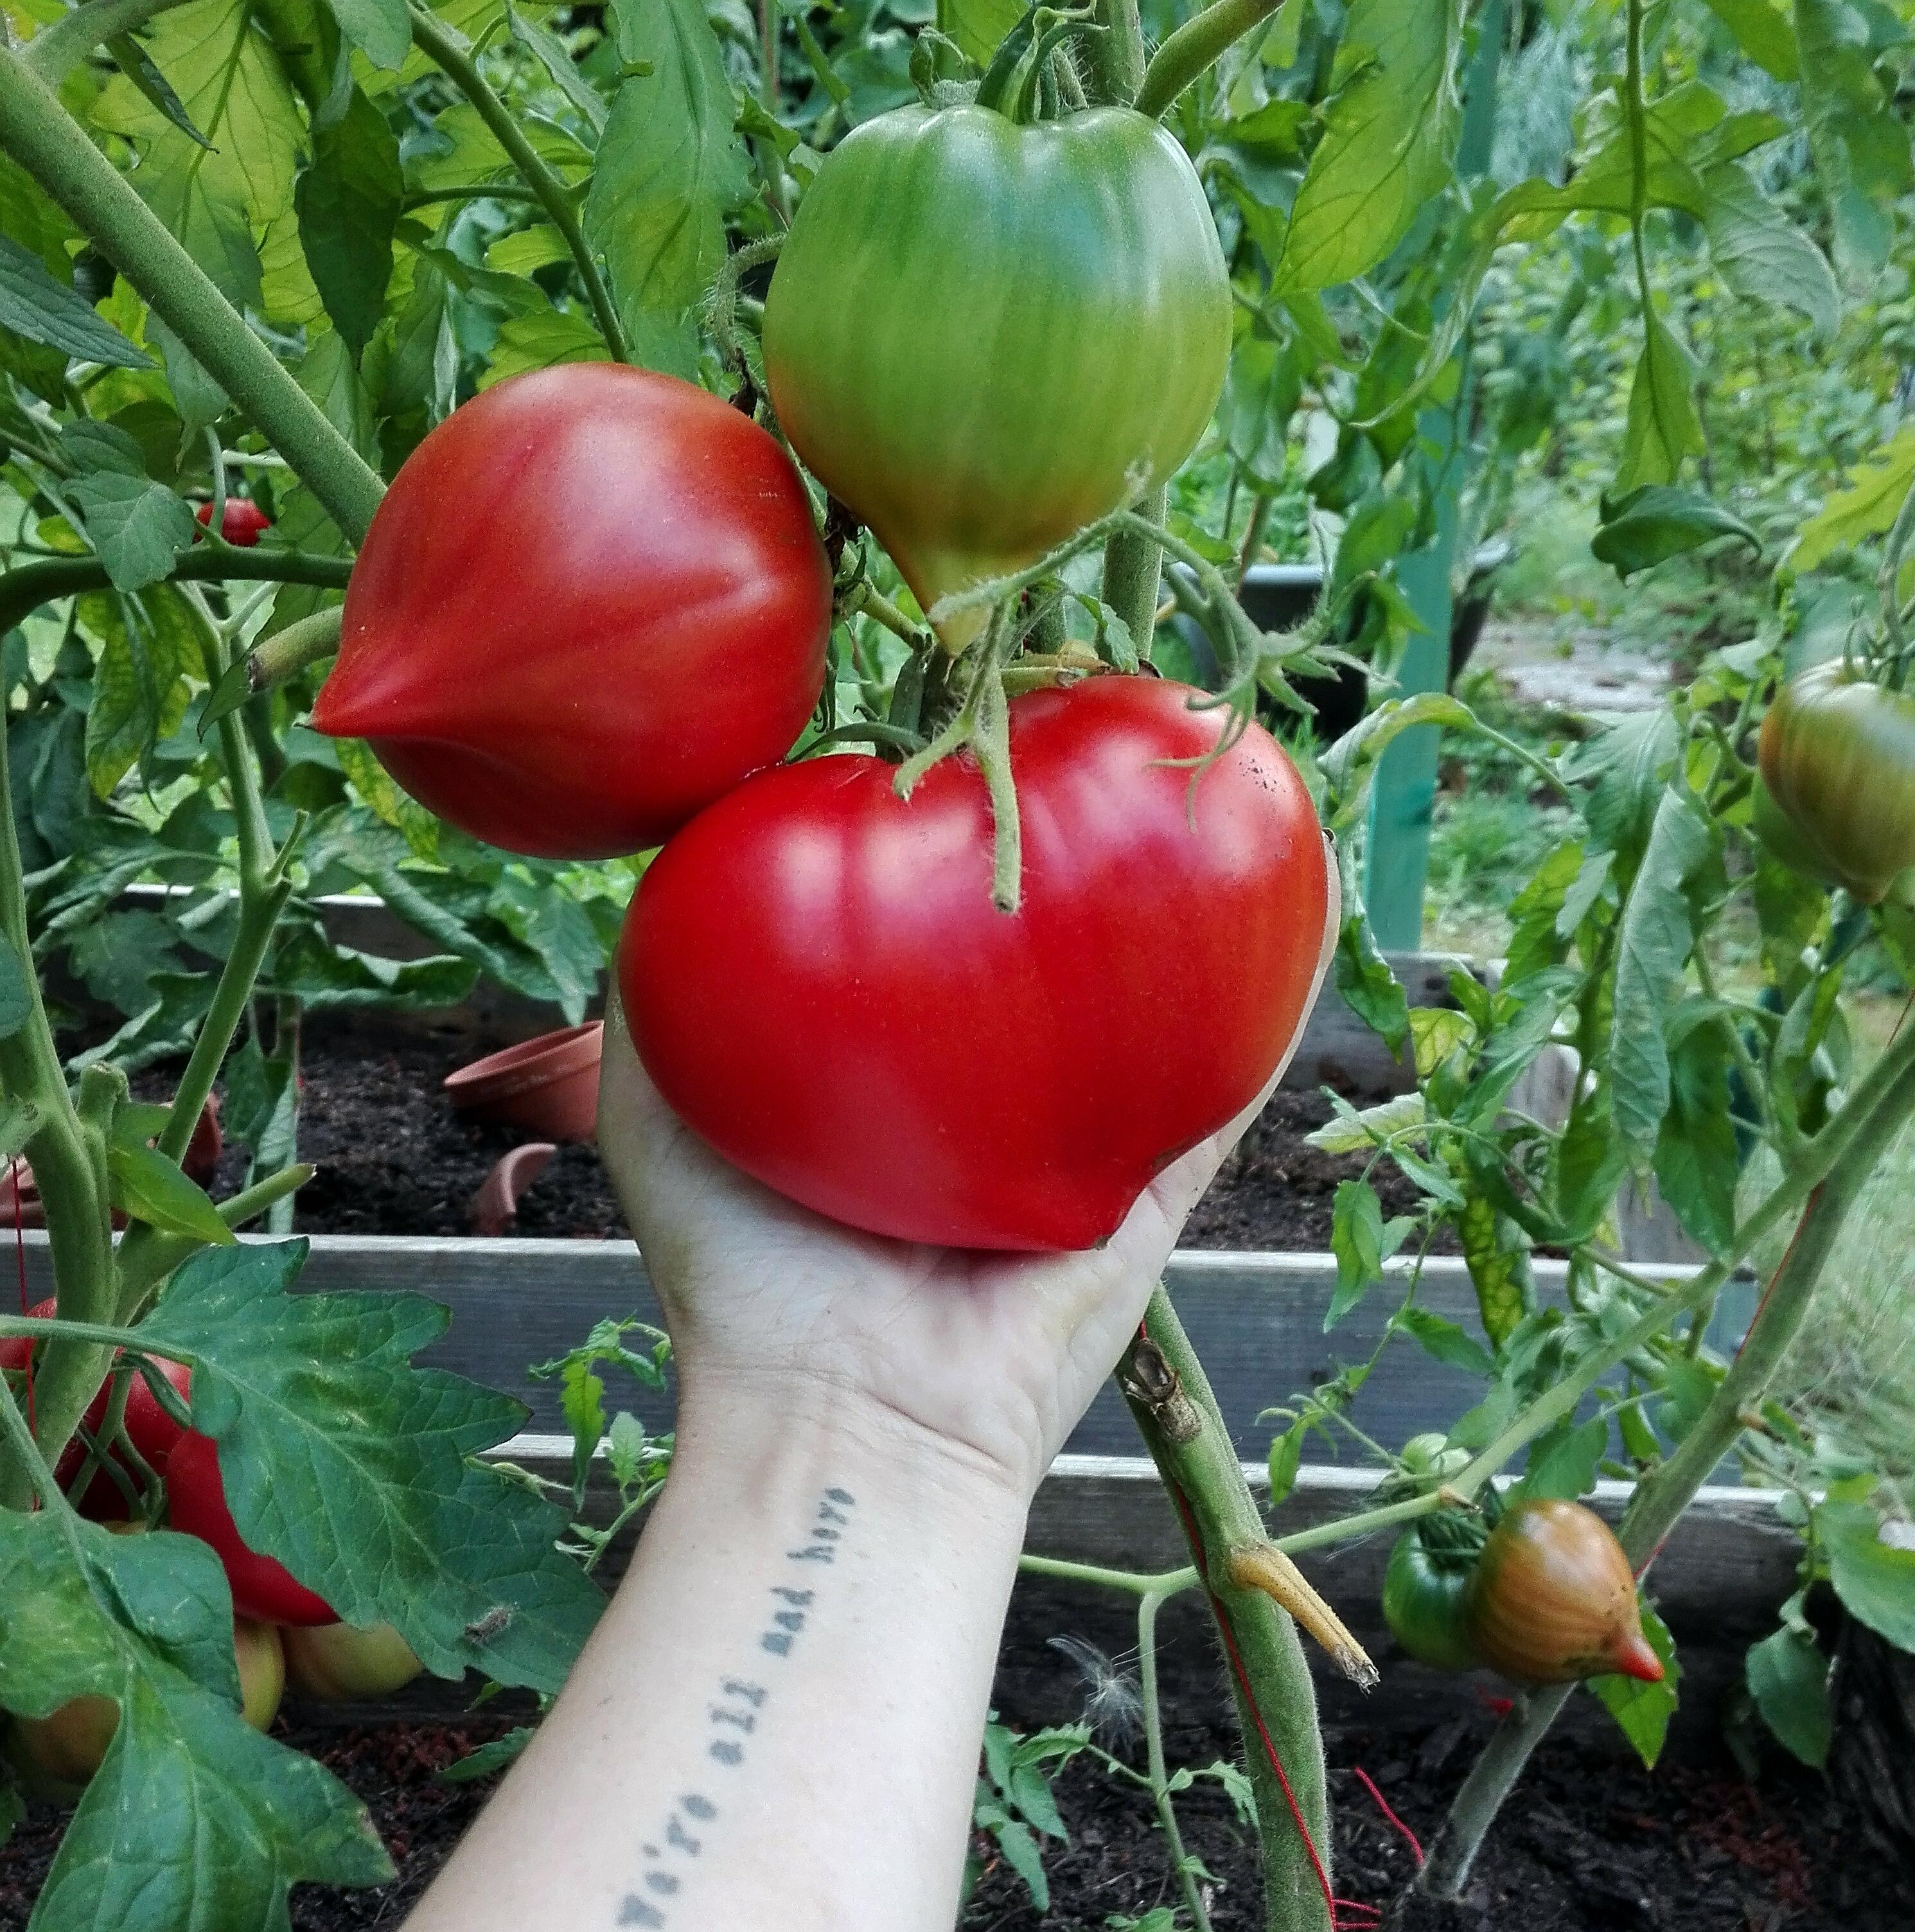 Ob man hier Gemüse aus dem #garten sehen will, fragte ich.😂 Aber diese herzige #Tomate ist ja nicht irgendein Gemüse, 